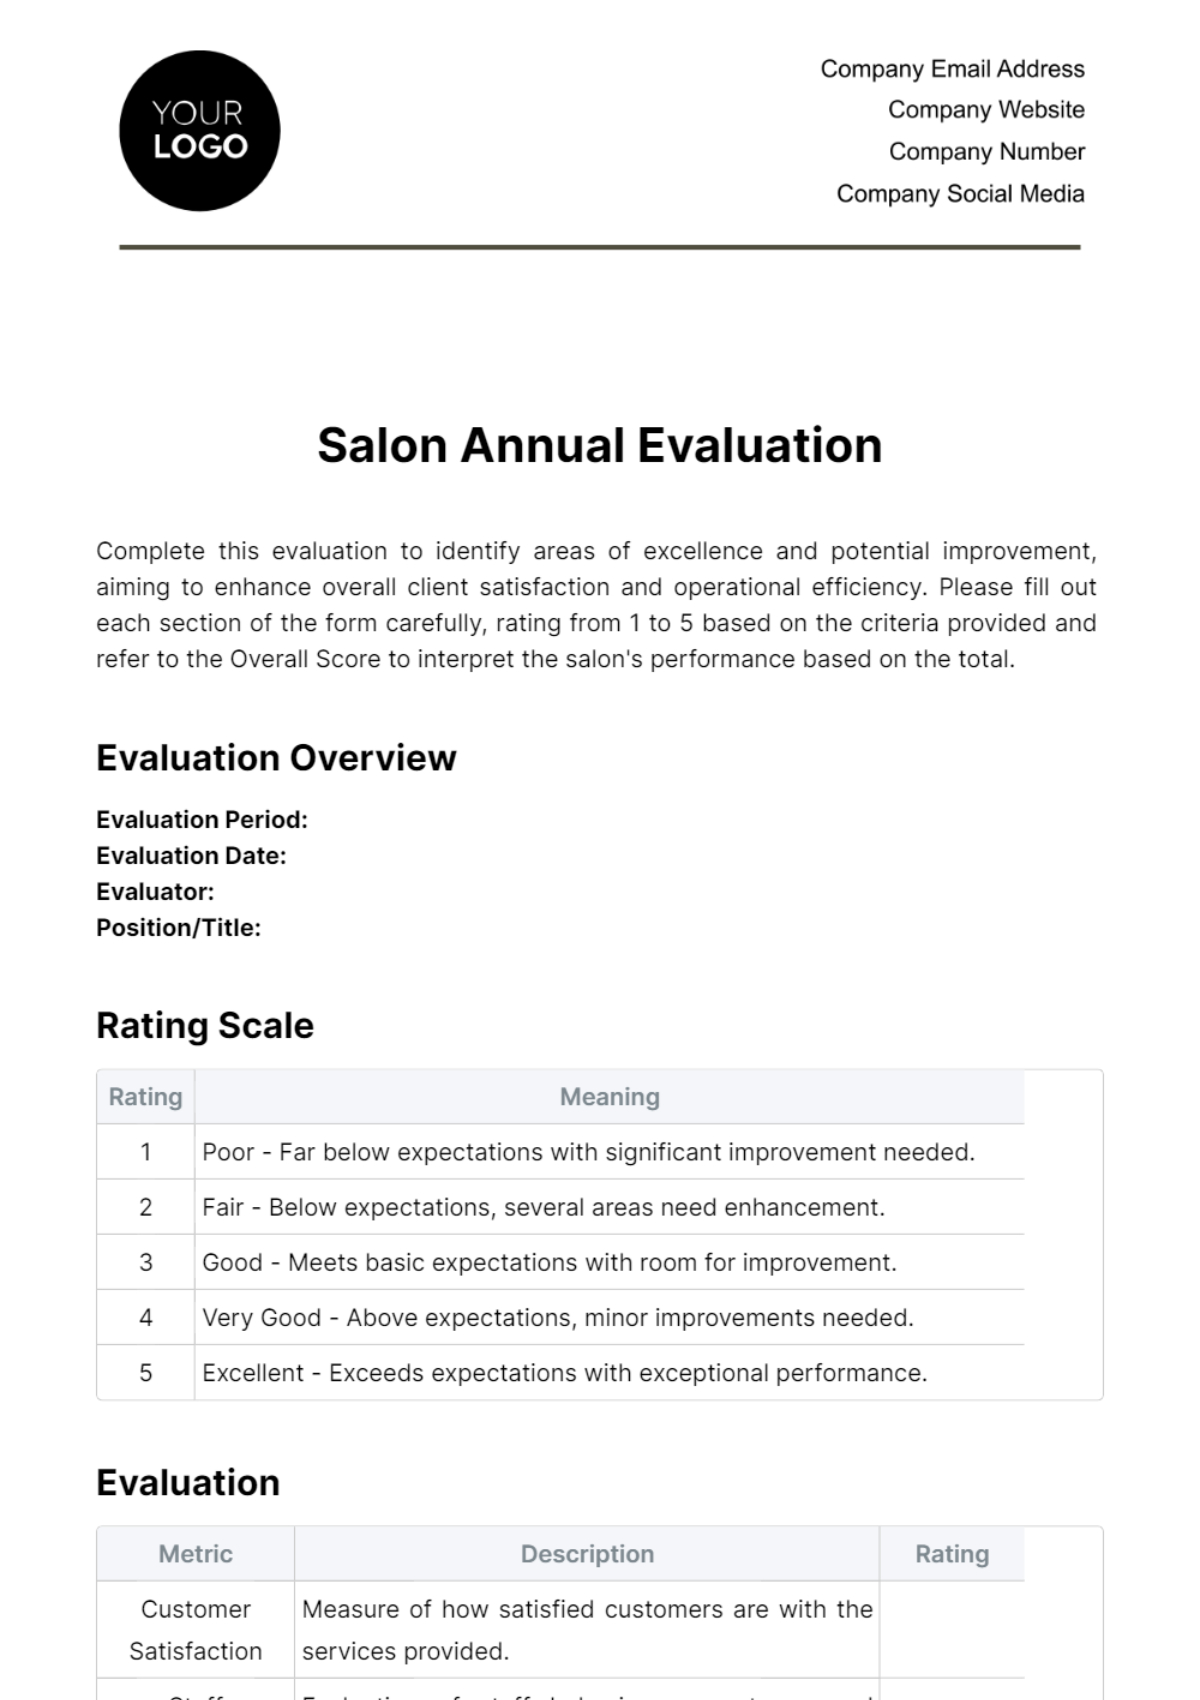 Salon Annual Evaluation Template